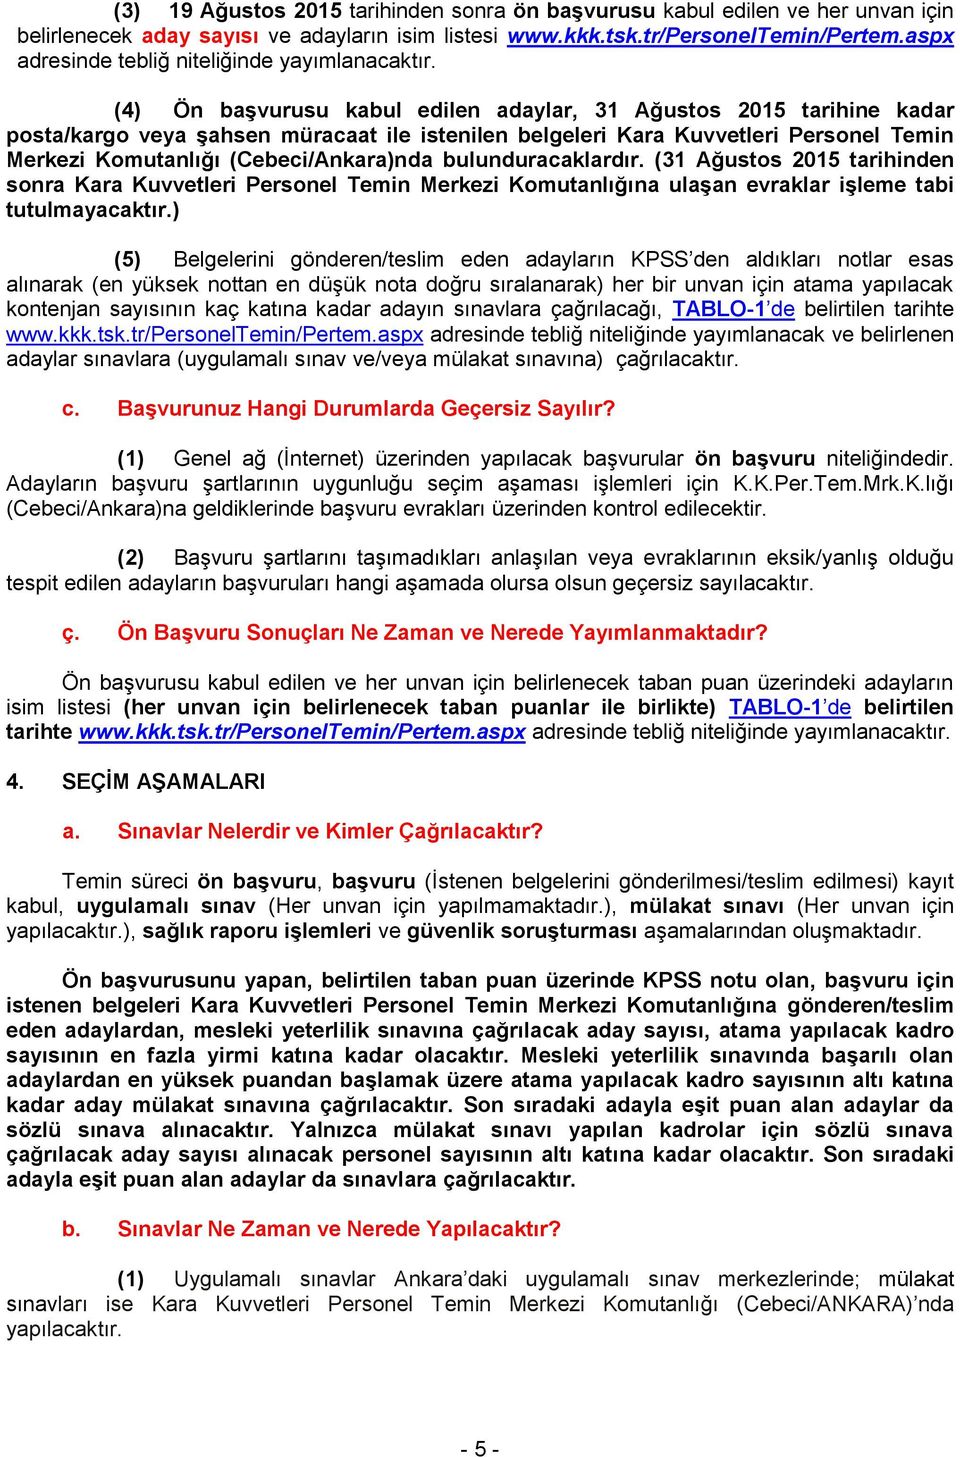 (4) Ön başvurusu kabul edilen adaylar, 31 Ağustos 2015 tarihine kadar posta/kargo veya şahsen müracaat ile istenilen belgeleri Kara Kuvvetleri Personel Temin Merkezi Komutanlığı (Cebeci/Ankara)nda